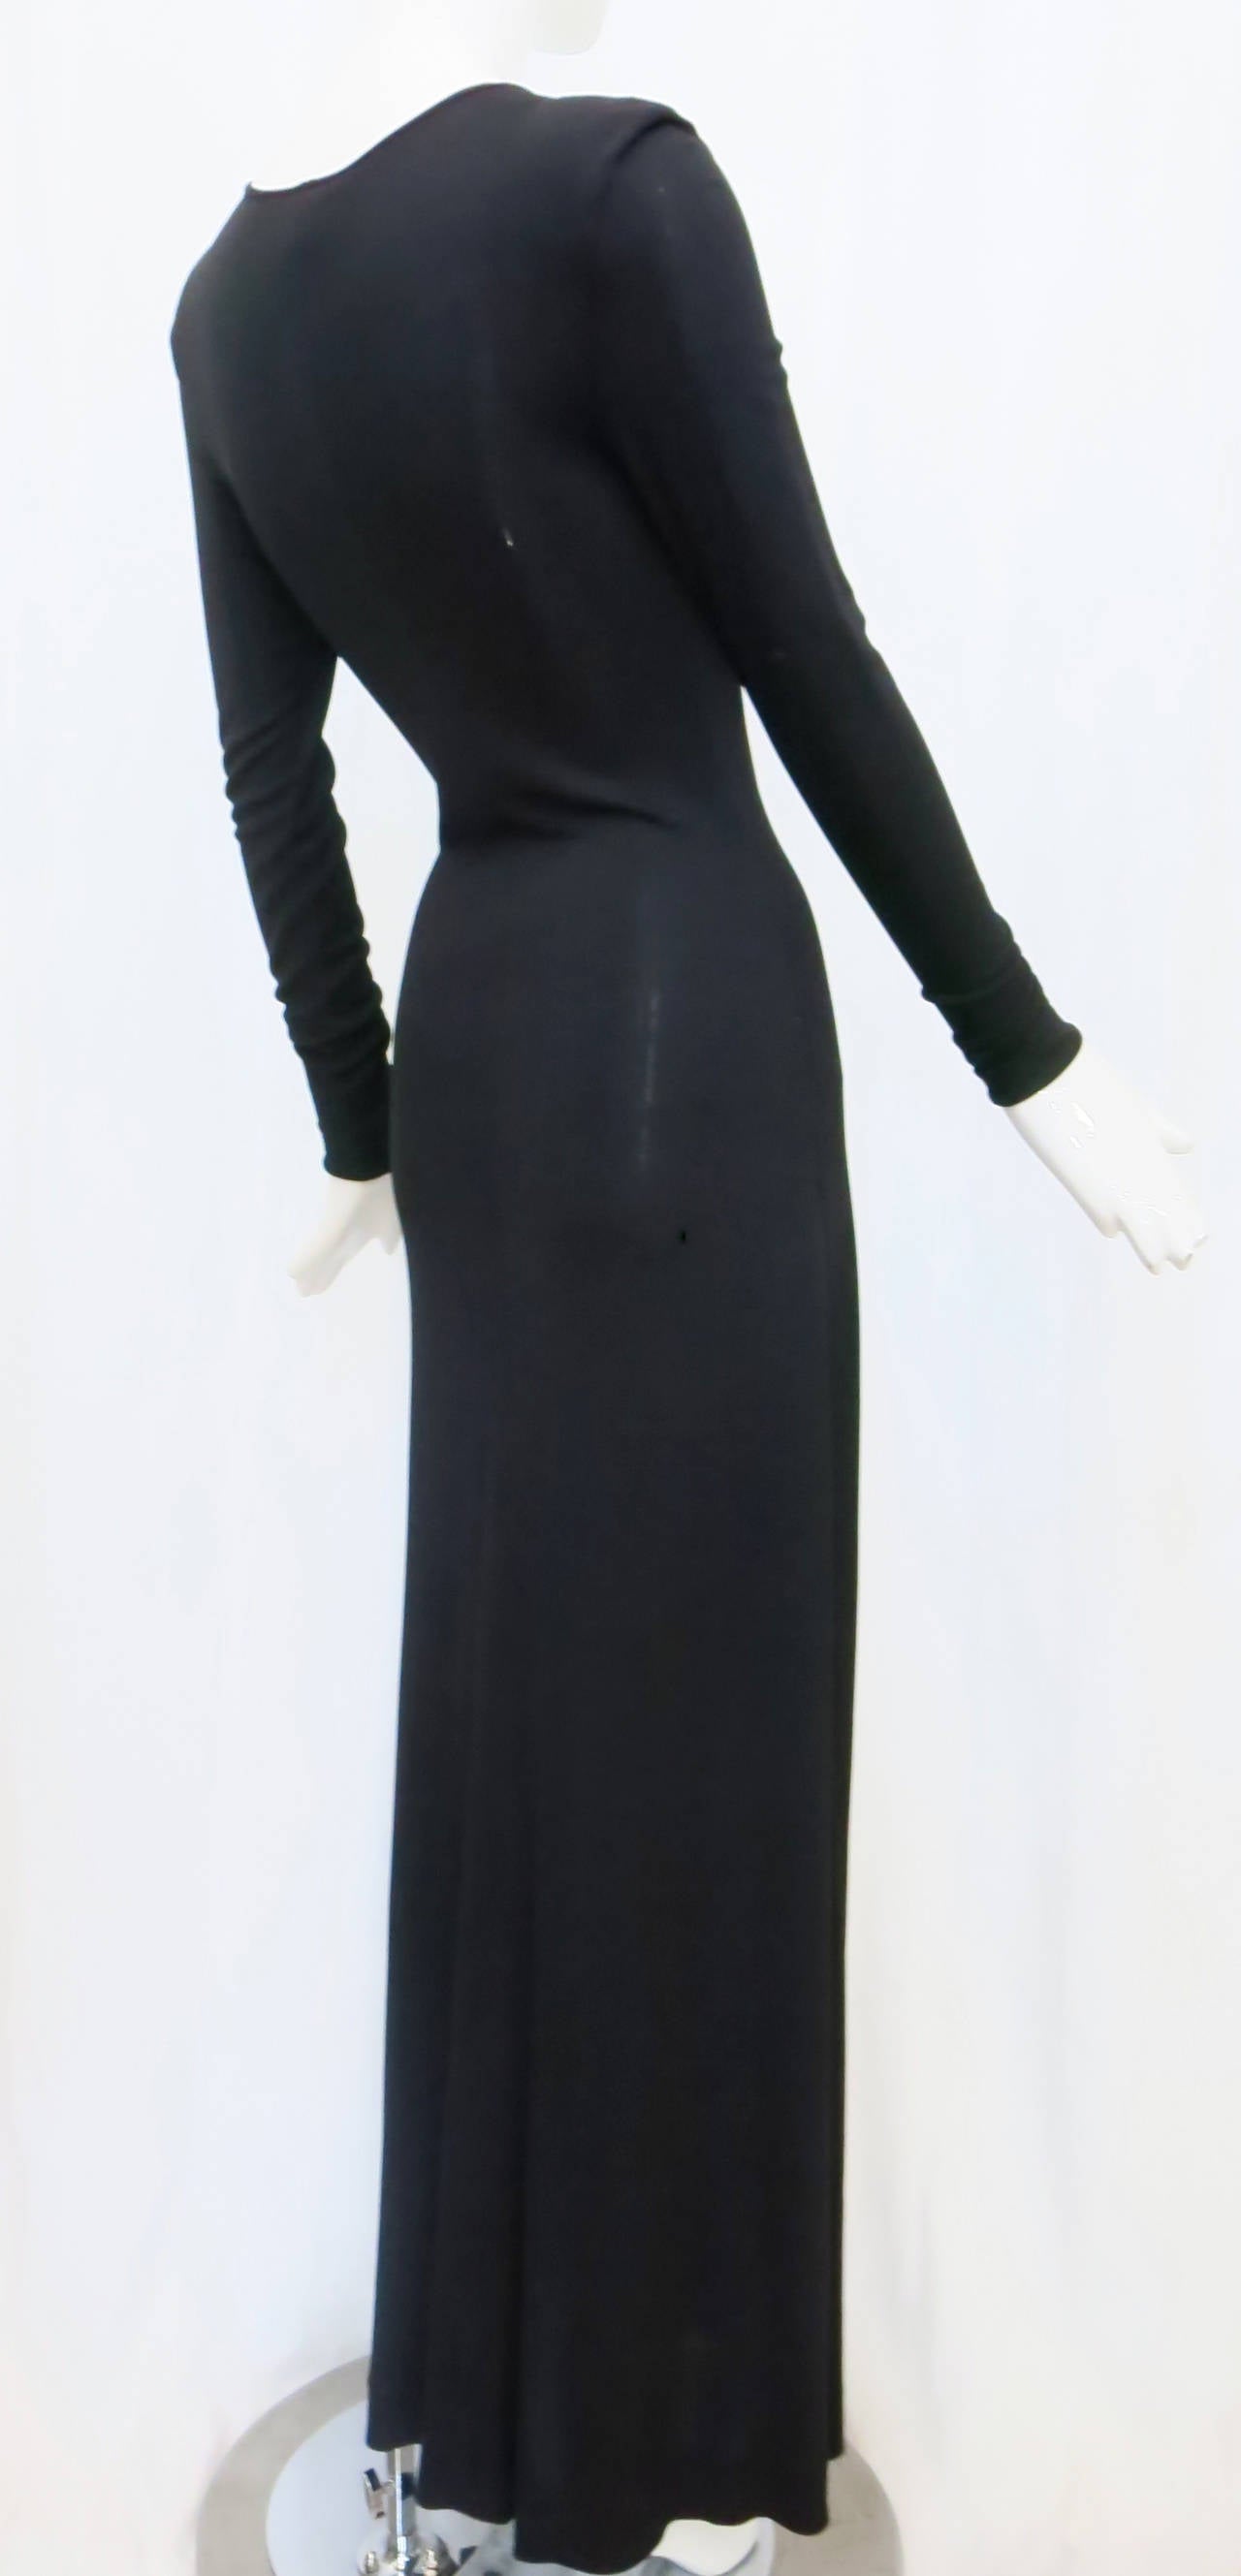 1980s slinky black maxi dress designed by the original 